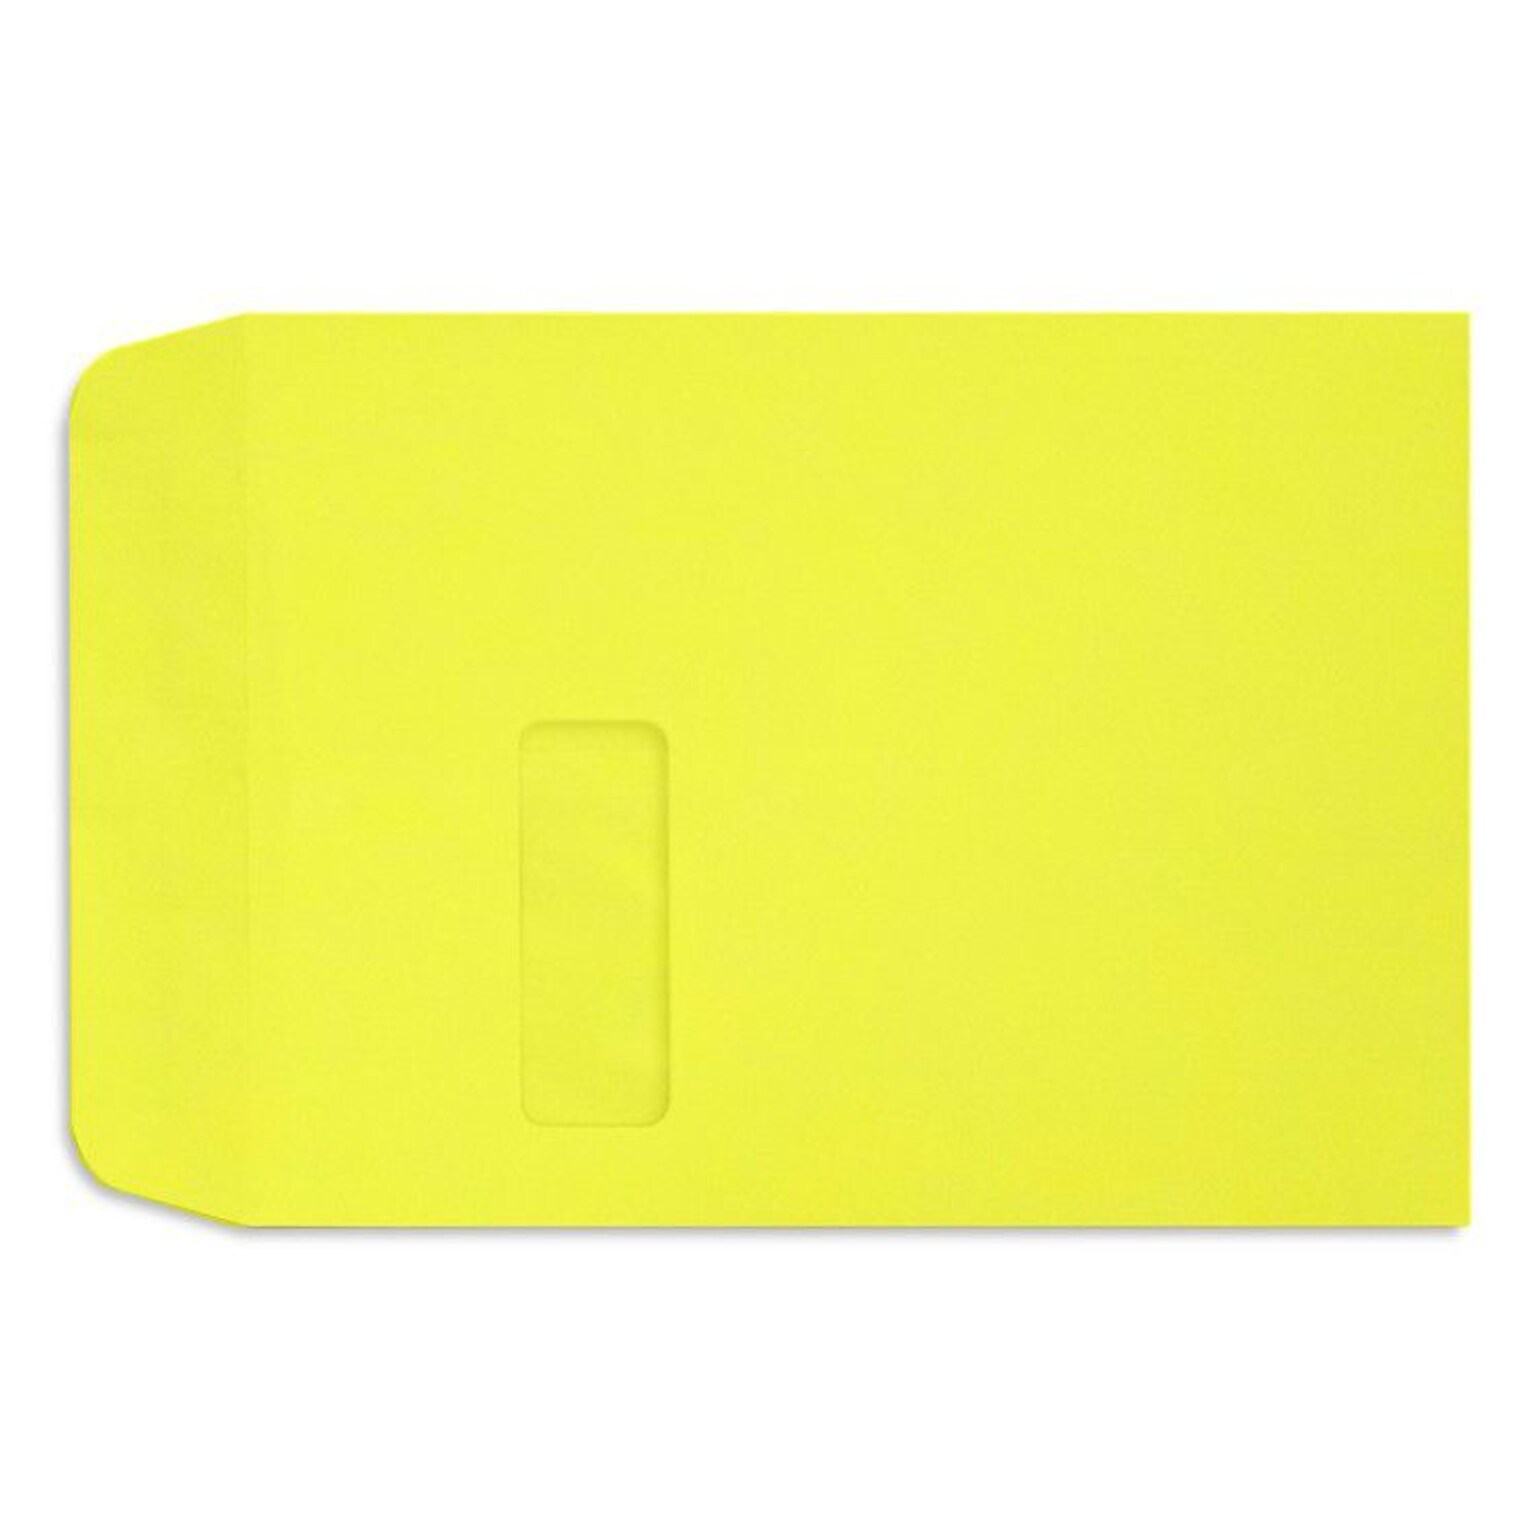 LUX Open End Open End Window Envelope, 9 x 12, Citrus Yellow, 250/Pack (LUX1590L20-250)